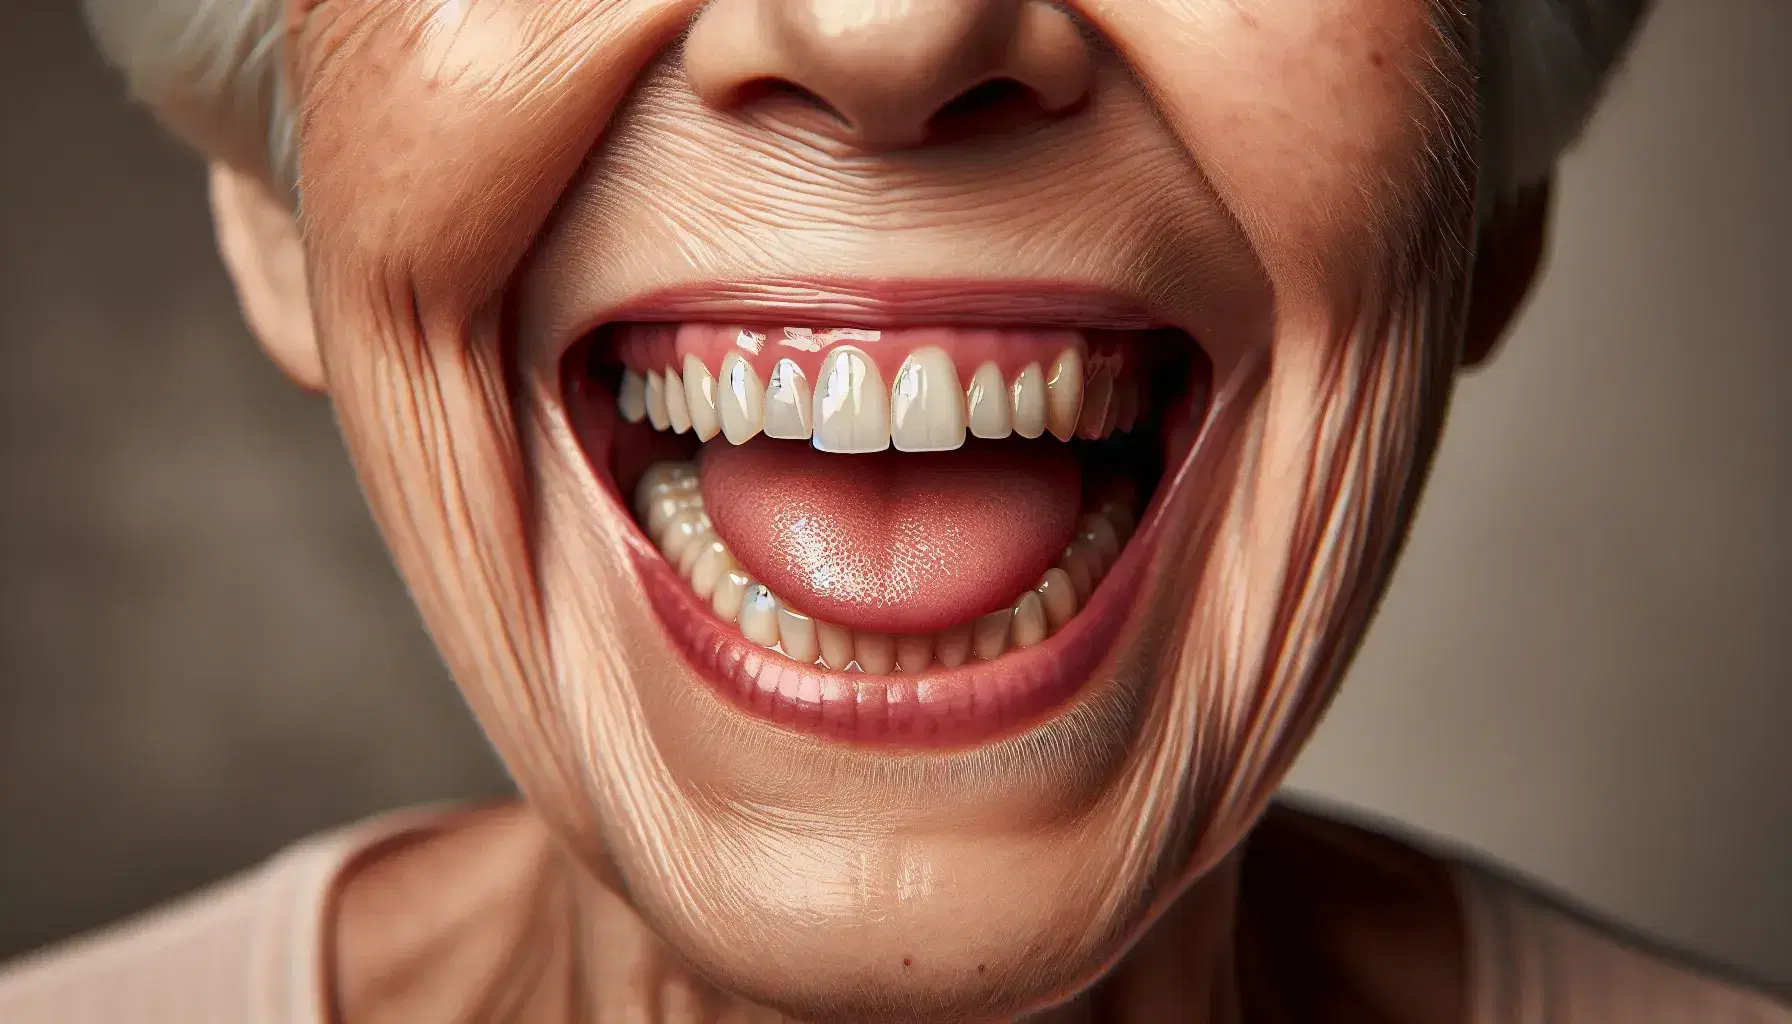 Sonrisa de persona mayor mostrando dientes naturales y restaurados, encías rosadas y lengua sana, sin señales de enfermedad oral, rodeada de piel arrugada.